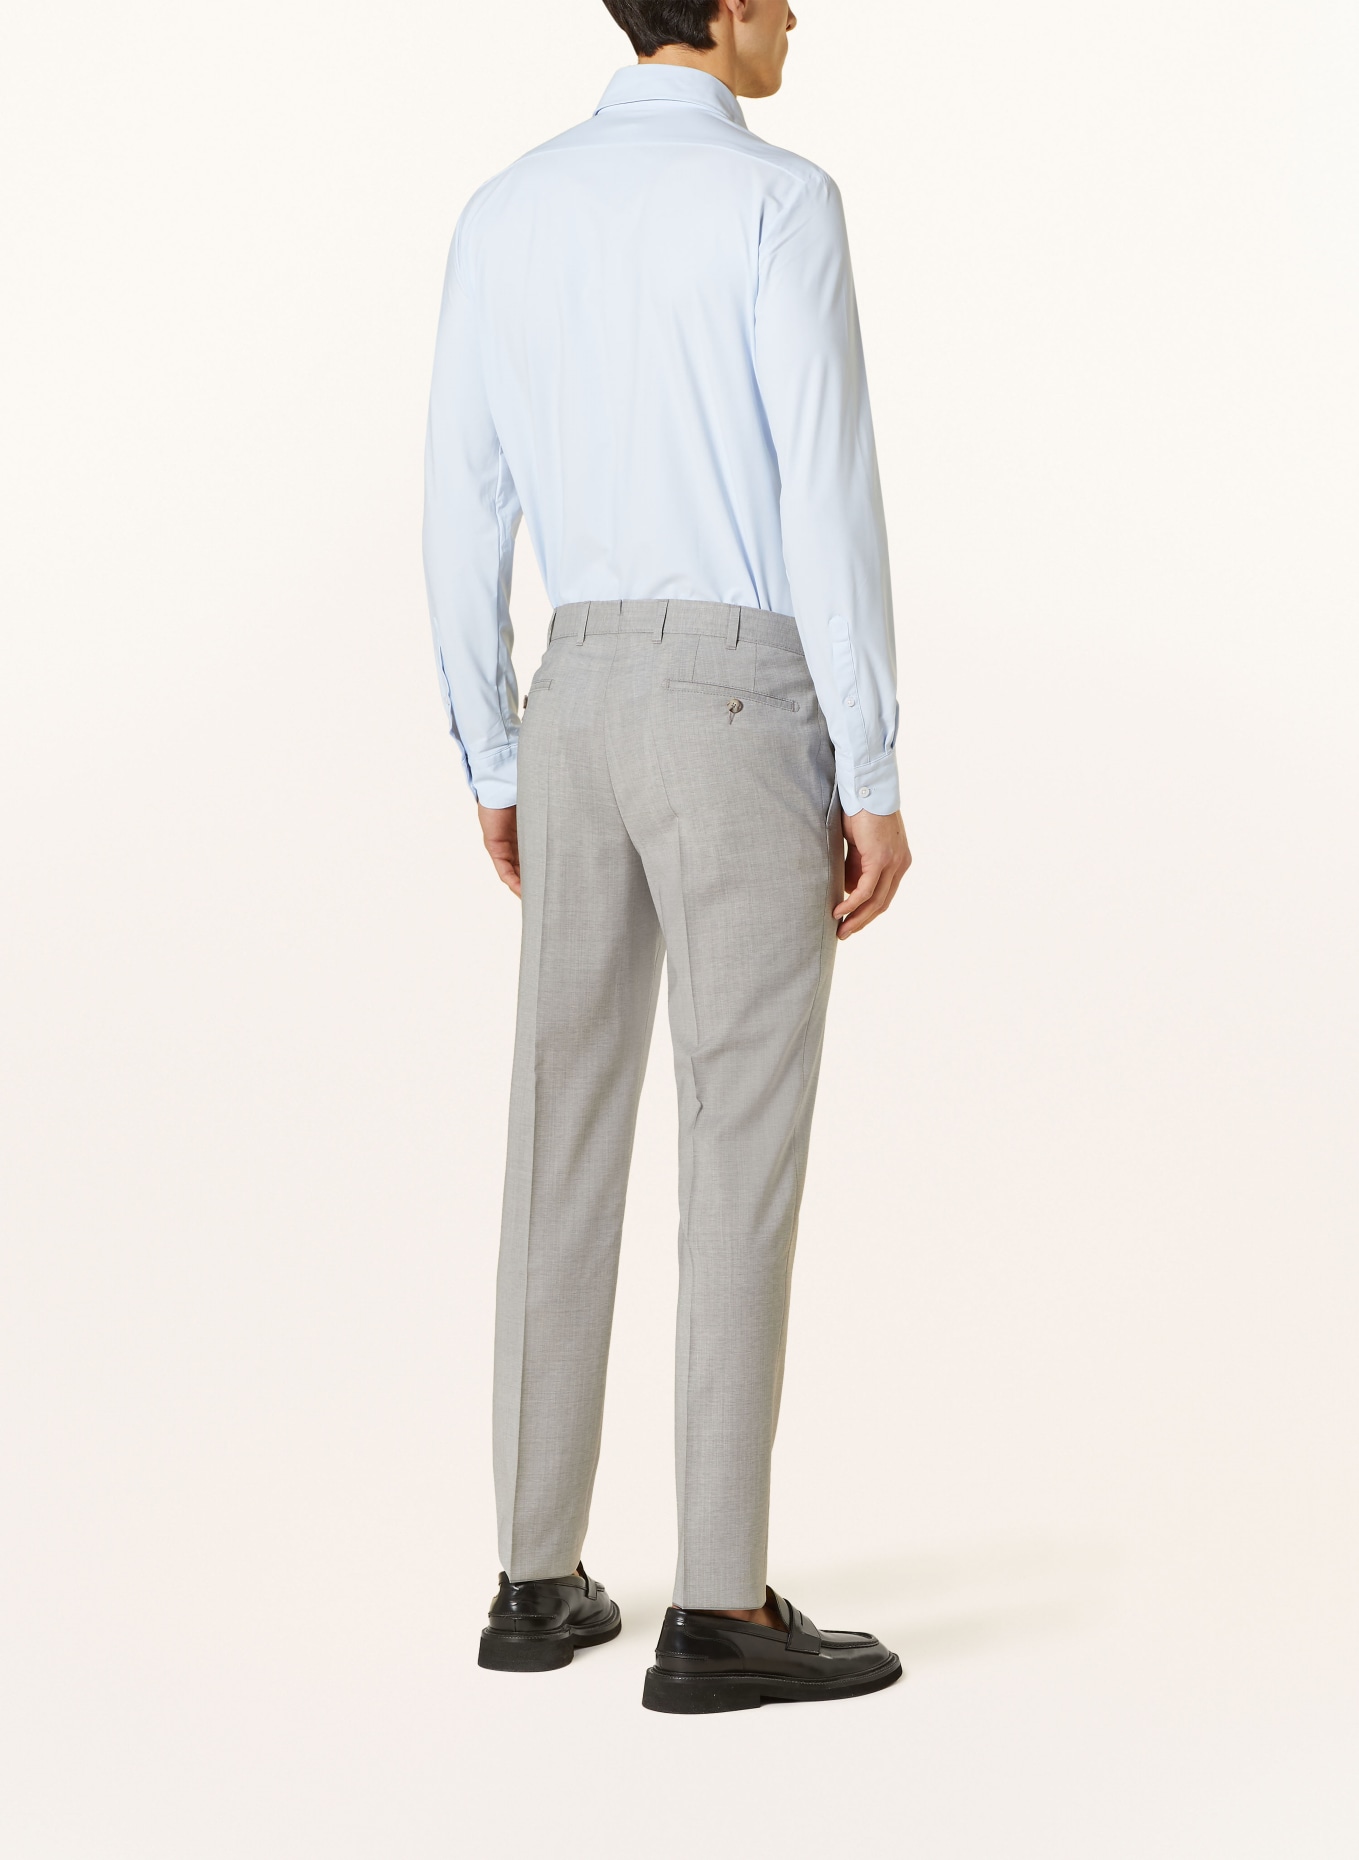 EDUARD DRESSLER Suit trousers shaped fit, Color: 013 HELLGRAU (Image 4)